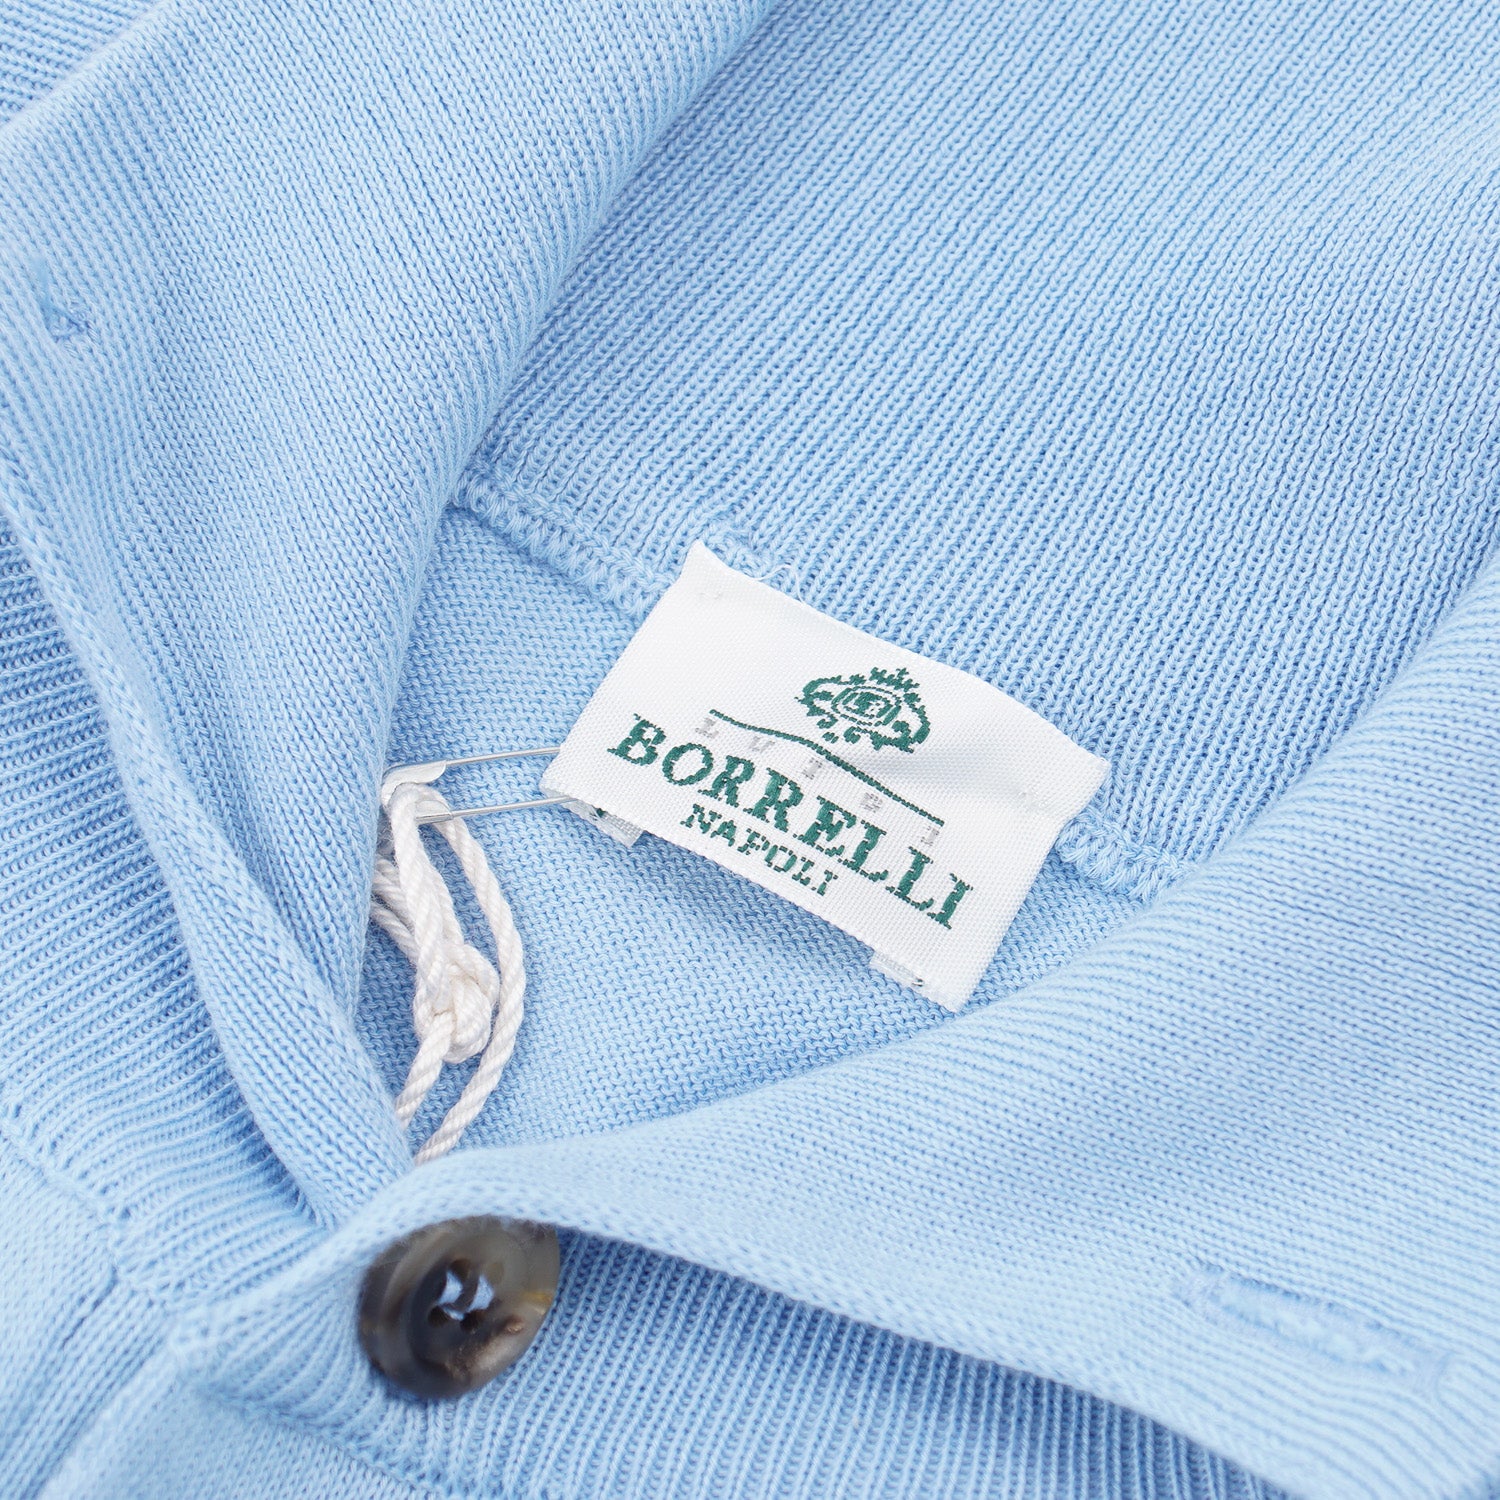 Luigi Borrelli Cotton Cardigan Sweater - Top Shelf Apparel